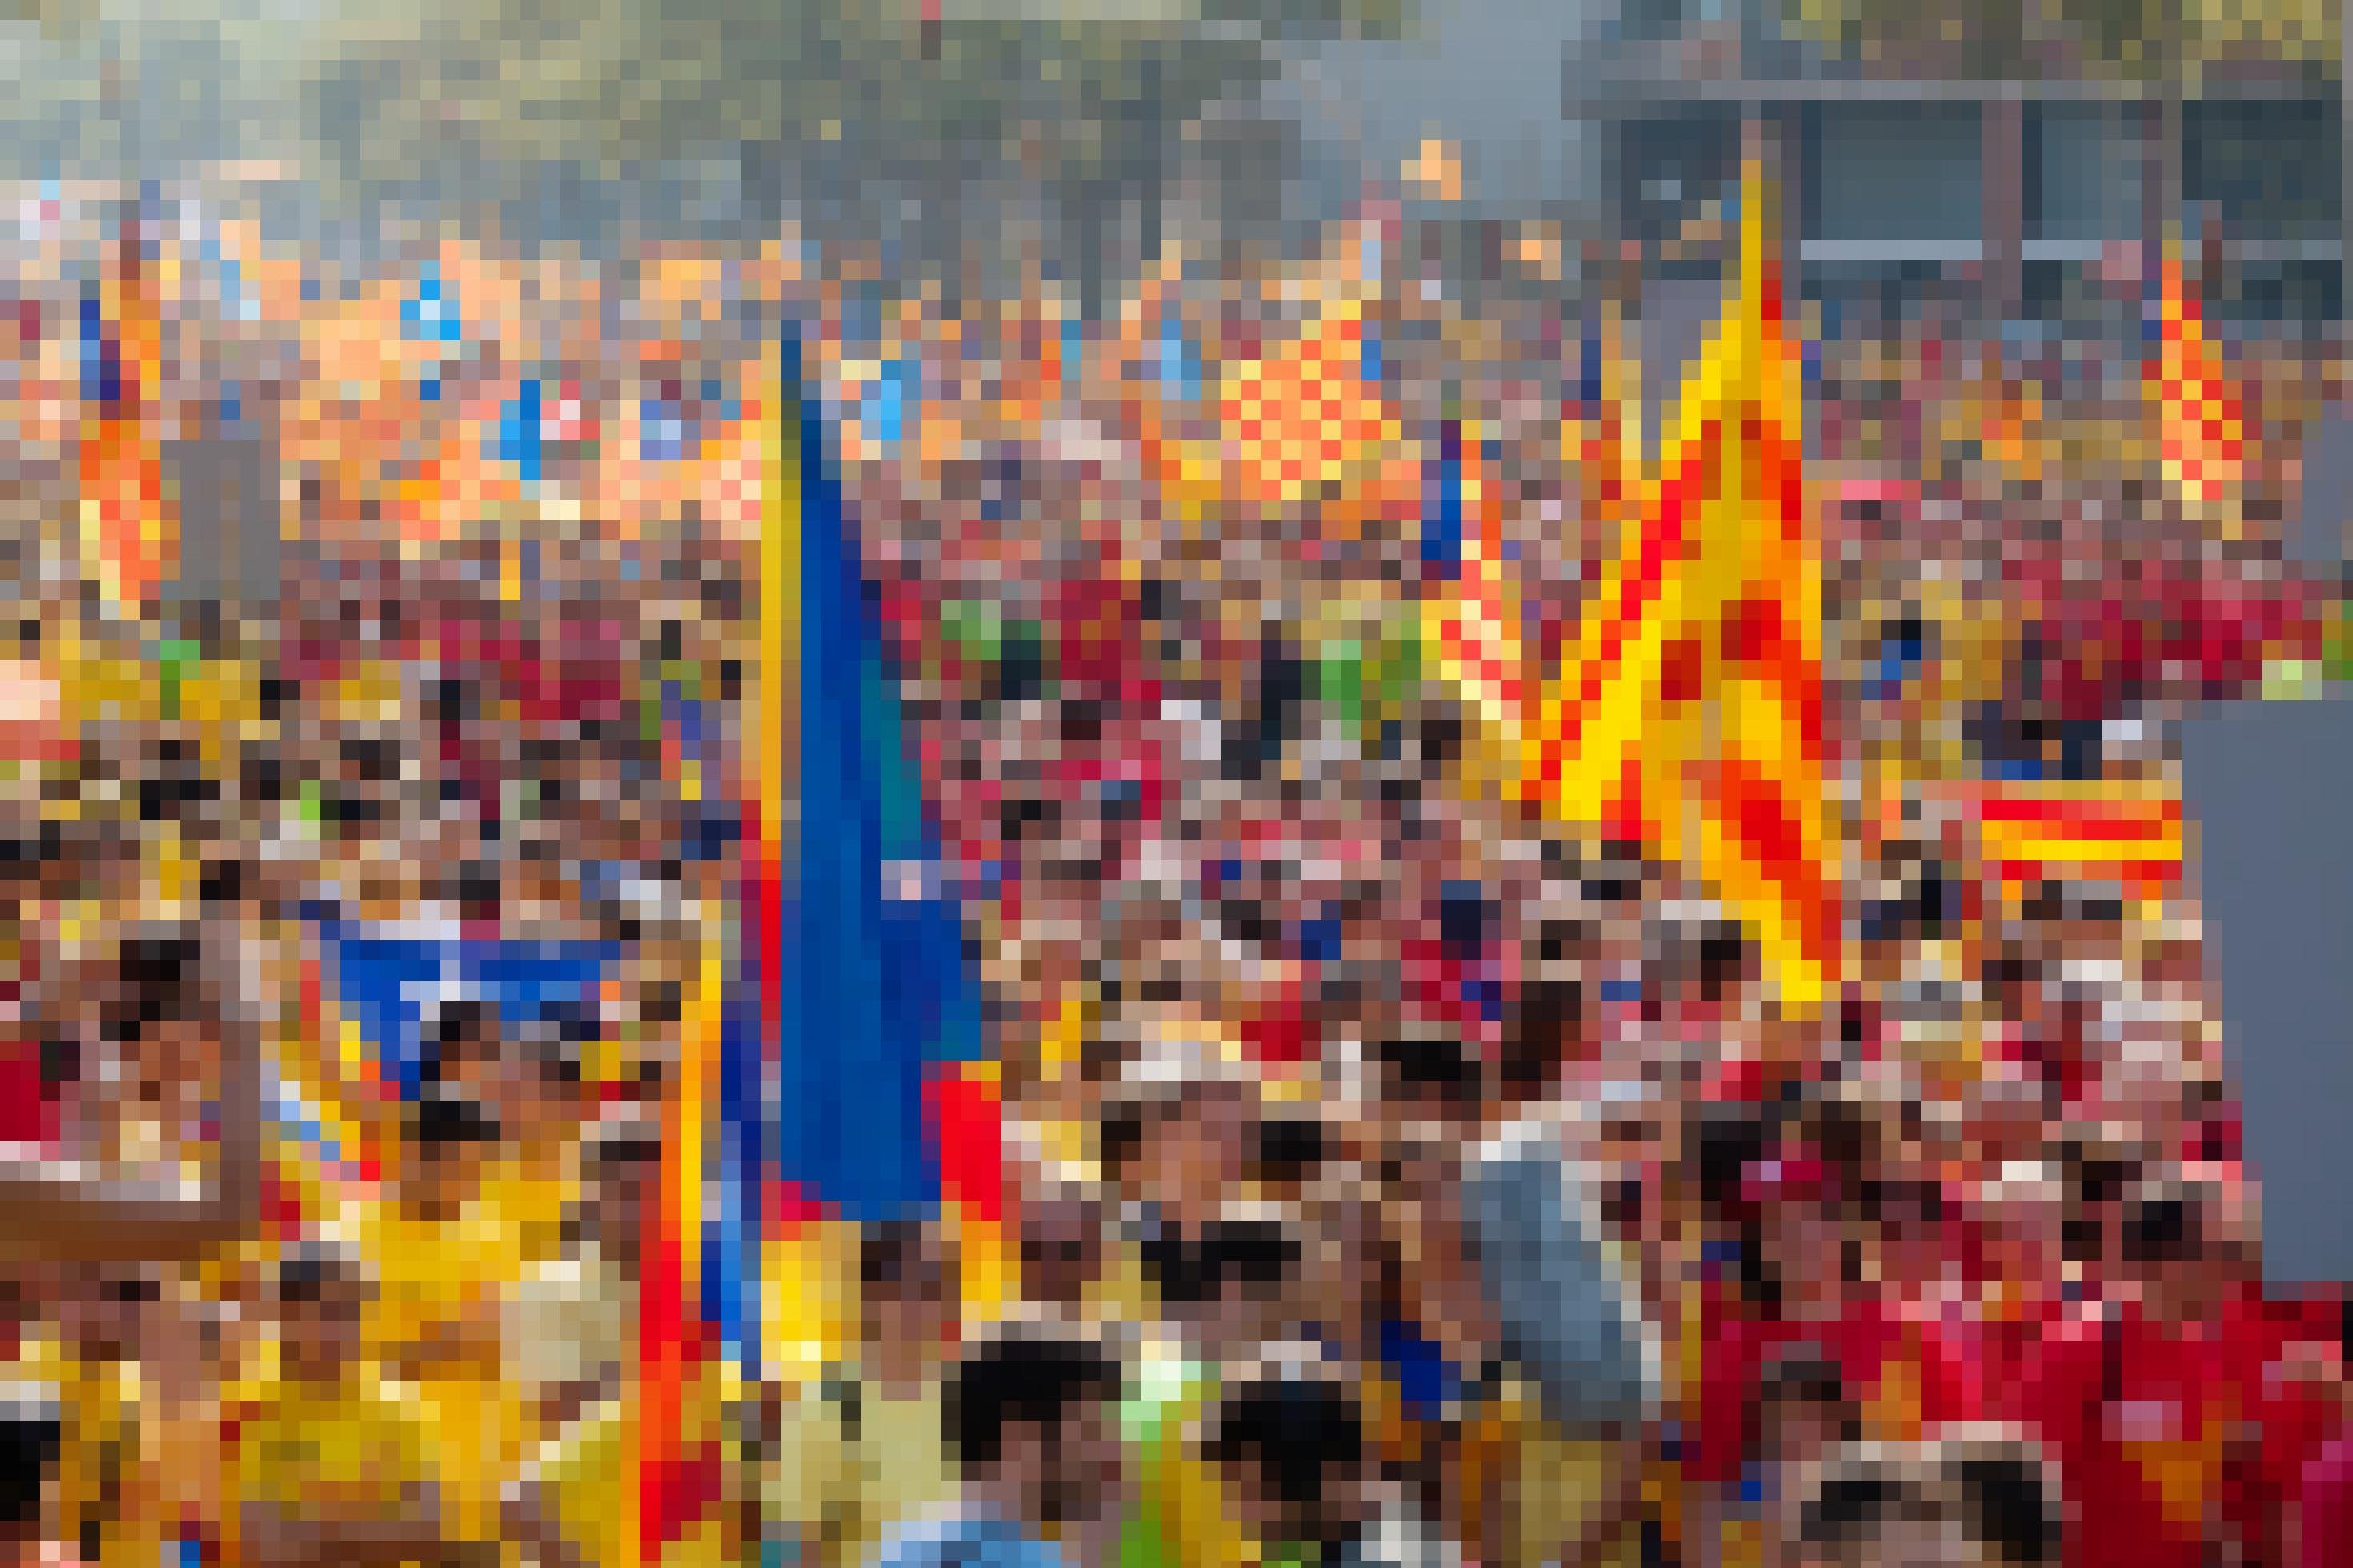 Eine Demonstration in Barcelona im Jahr 2014: Die Menschen fordern die Unabhängigkeit Kataloniens und schwenken katalonische Flaggen.